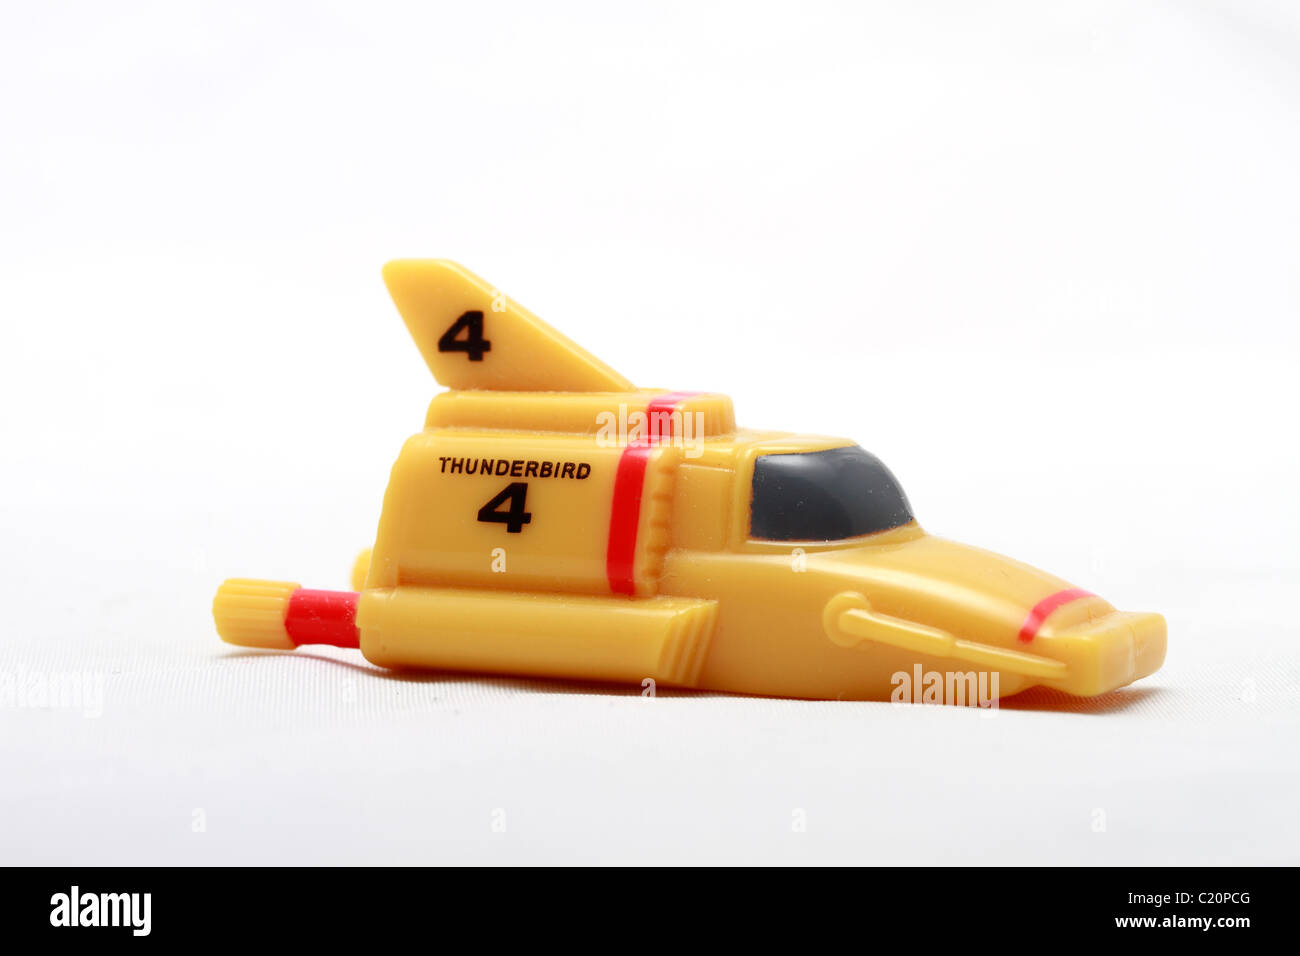 Thunderbird 4 jouet ou modèle de la télévision de la série de marionnettes  de Gerry Anderson Thunderbirds. Thunderbird 4 est le sous-marin spécialisé  Photo Stock - Alamy